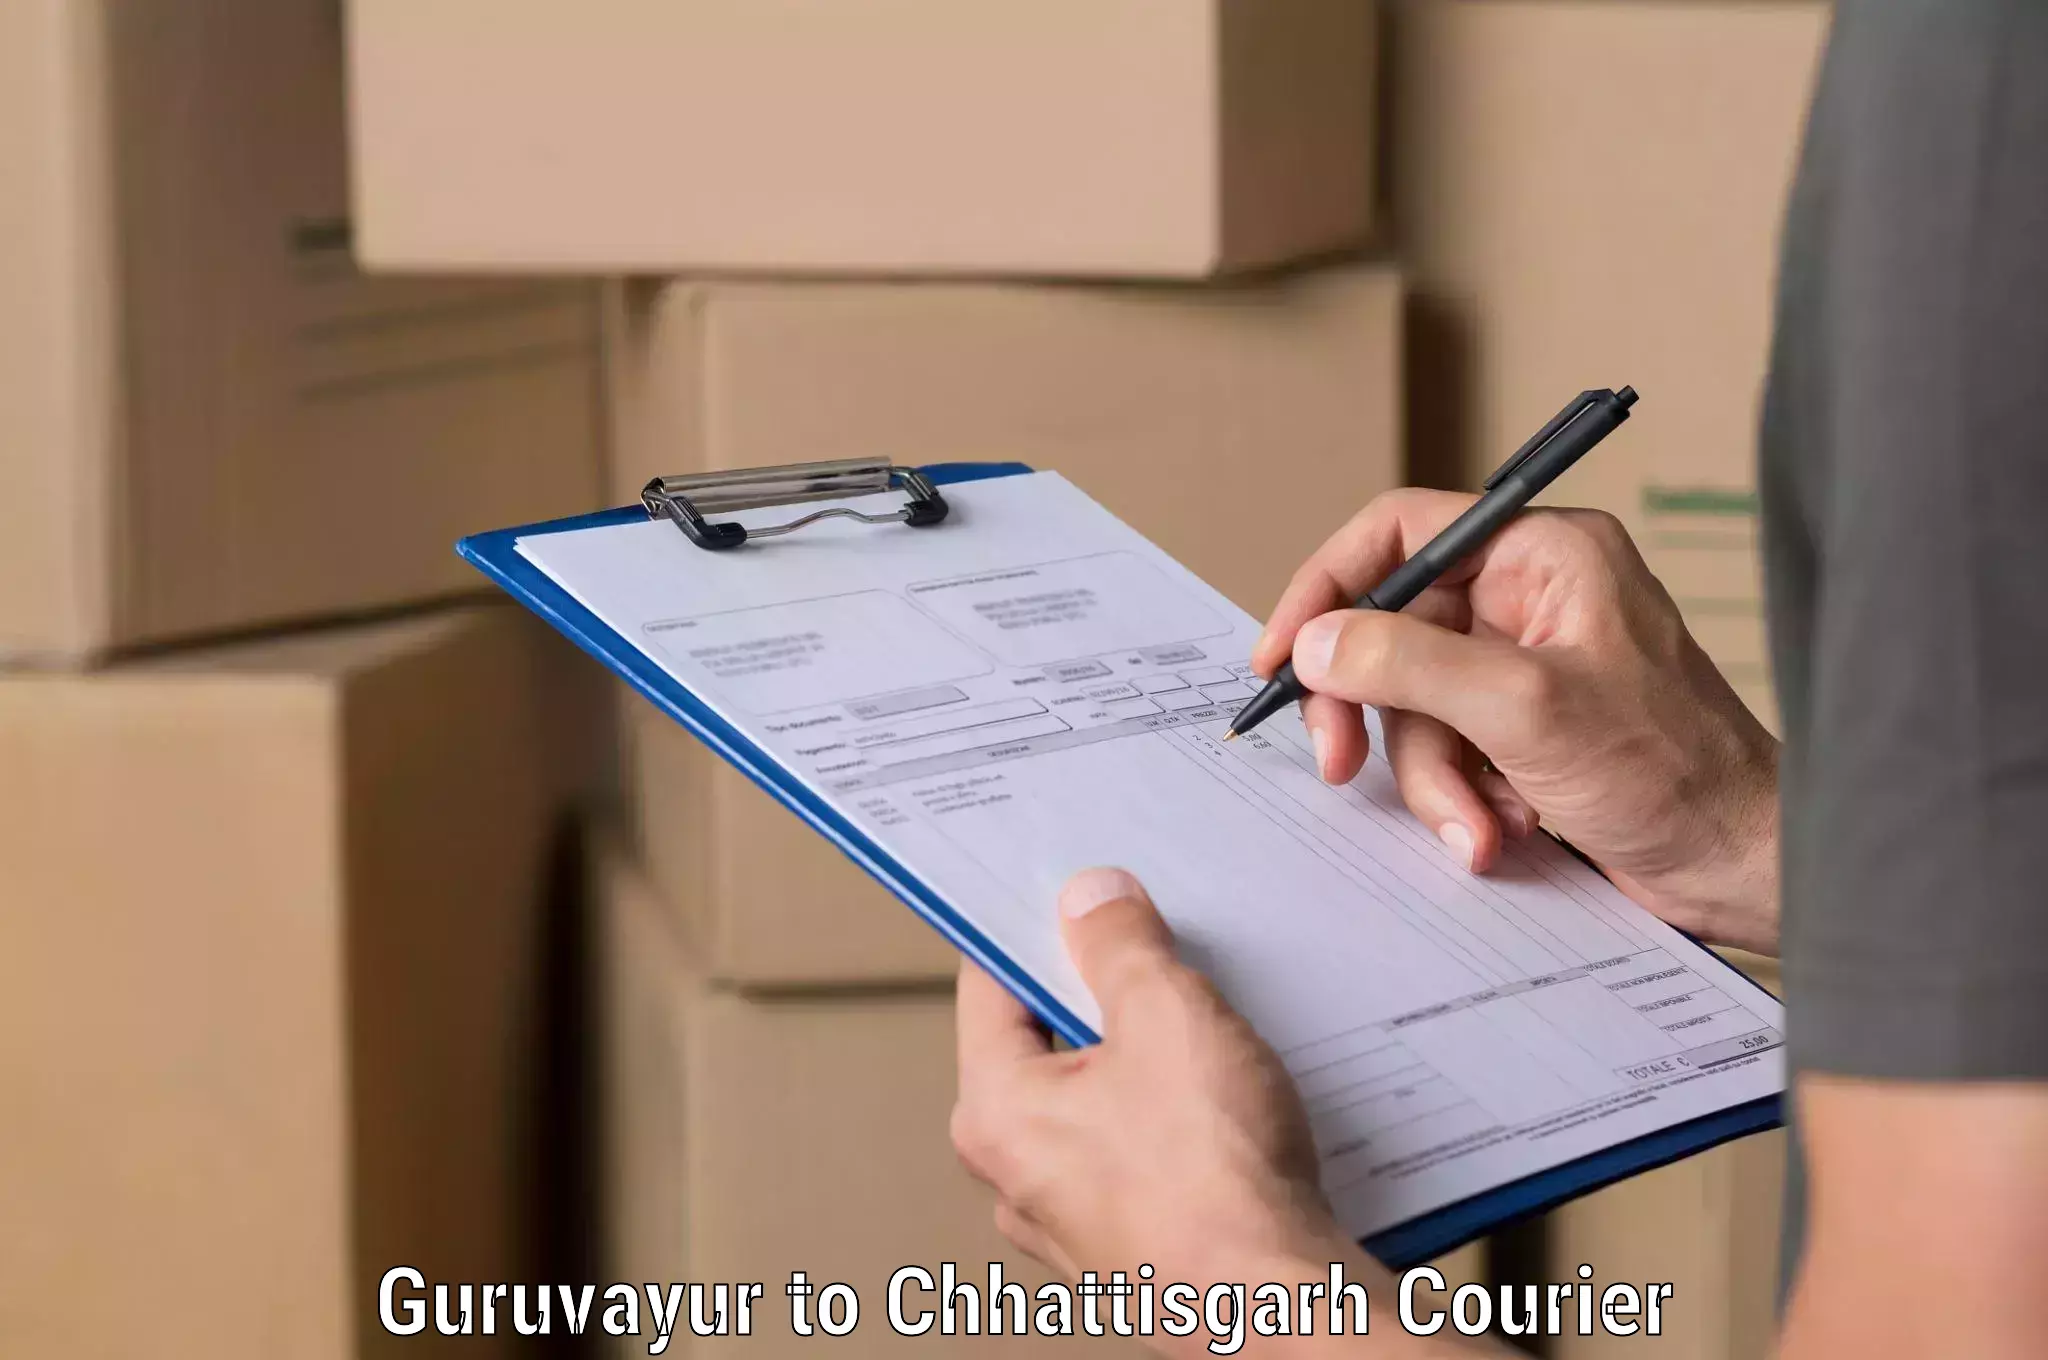 Global shipping networks Guruvayur to Chhattisgarh